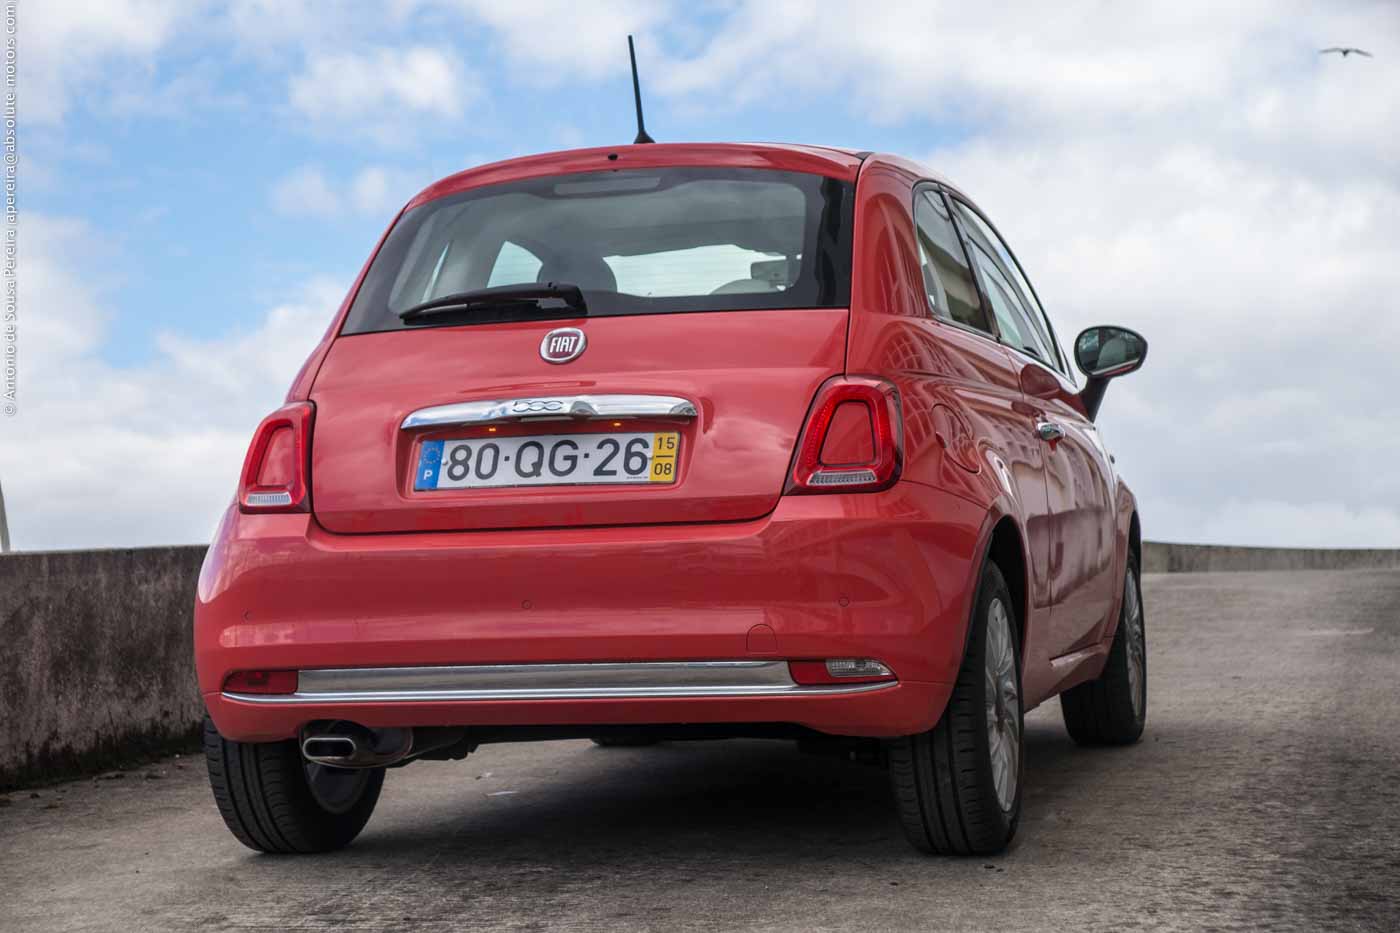 Os novos farolins traseiros são um dos principais factores distintivos do renovado Fiat 500